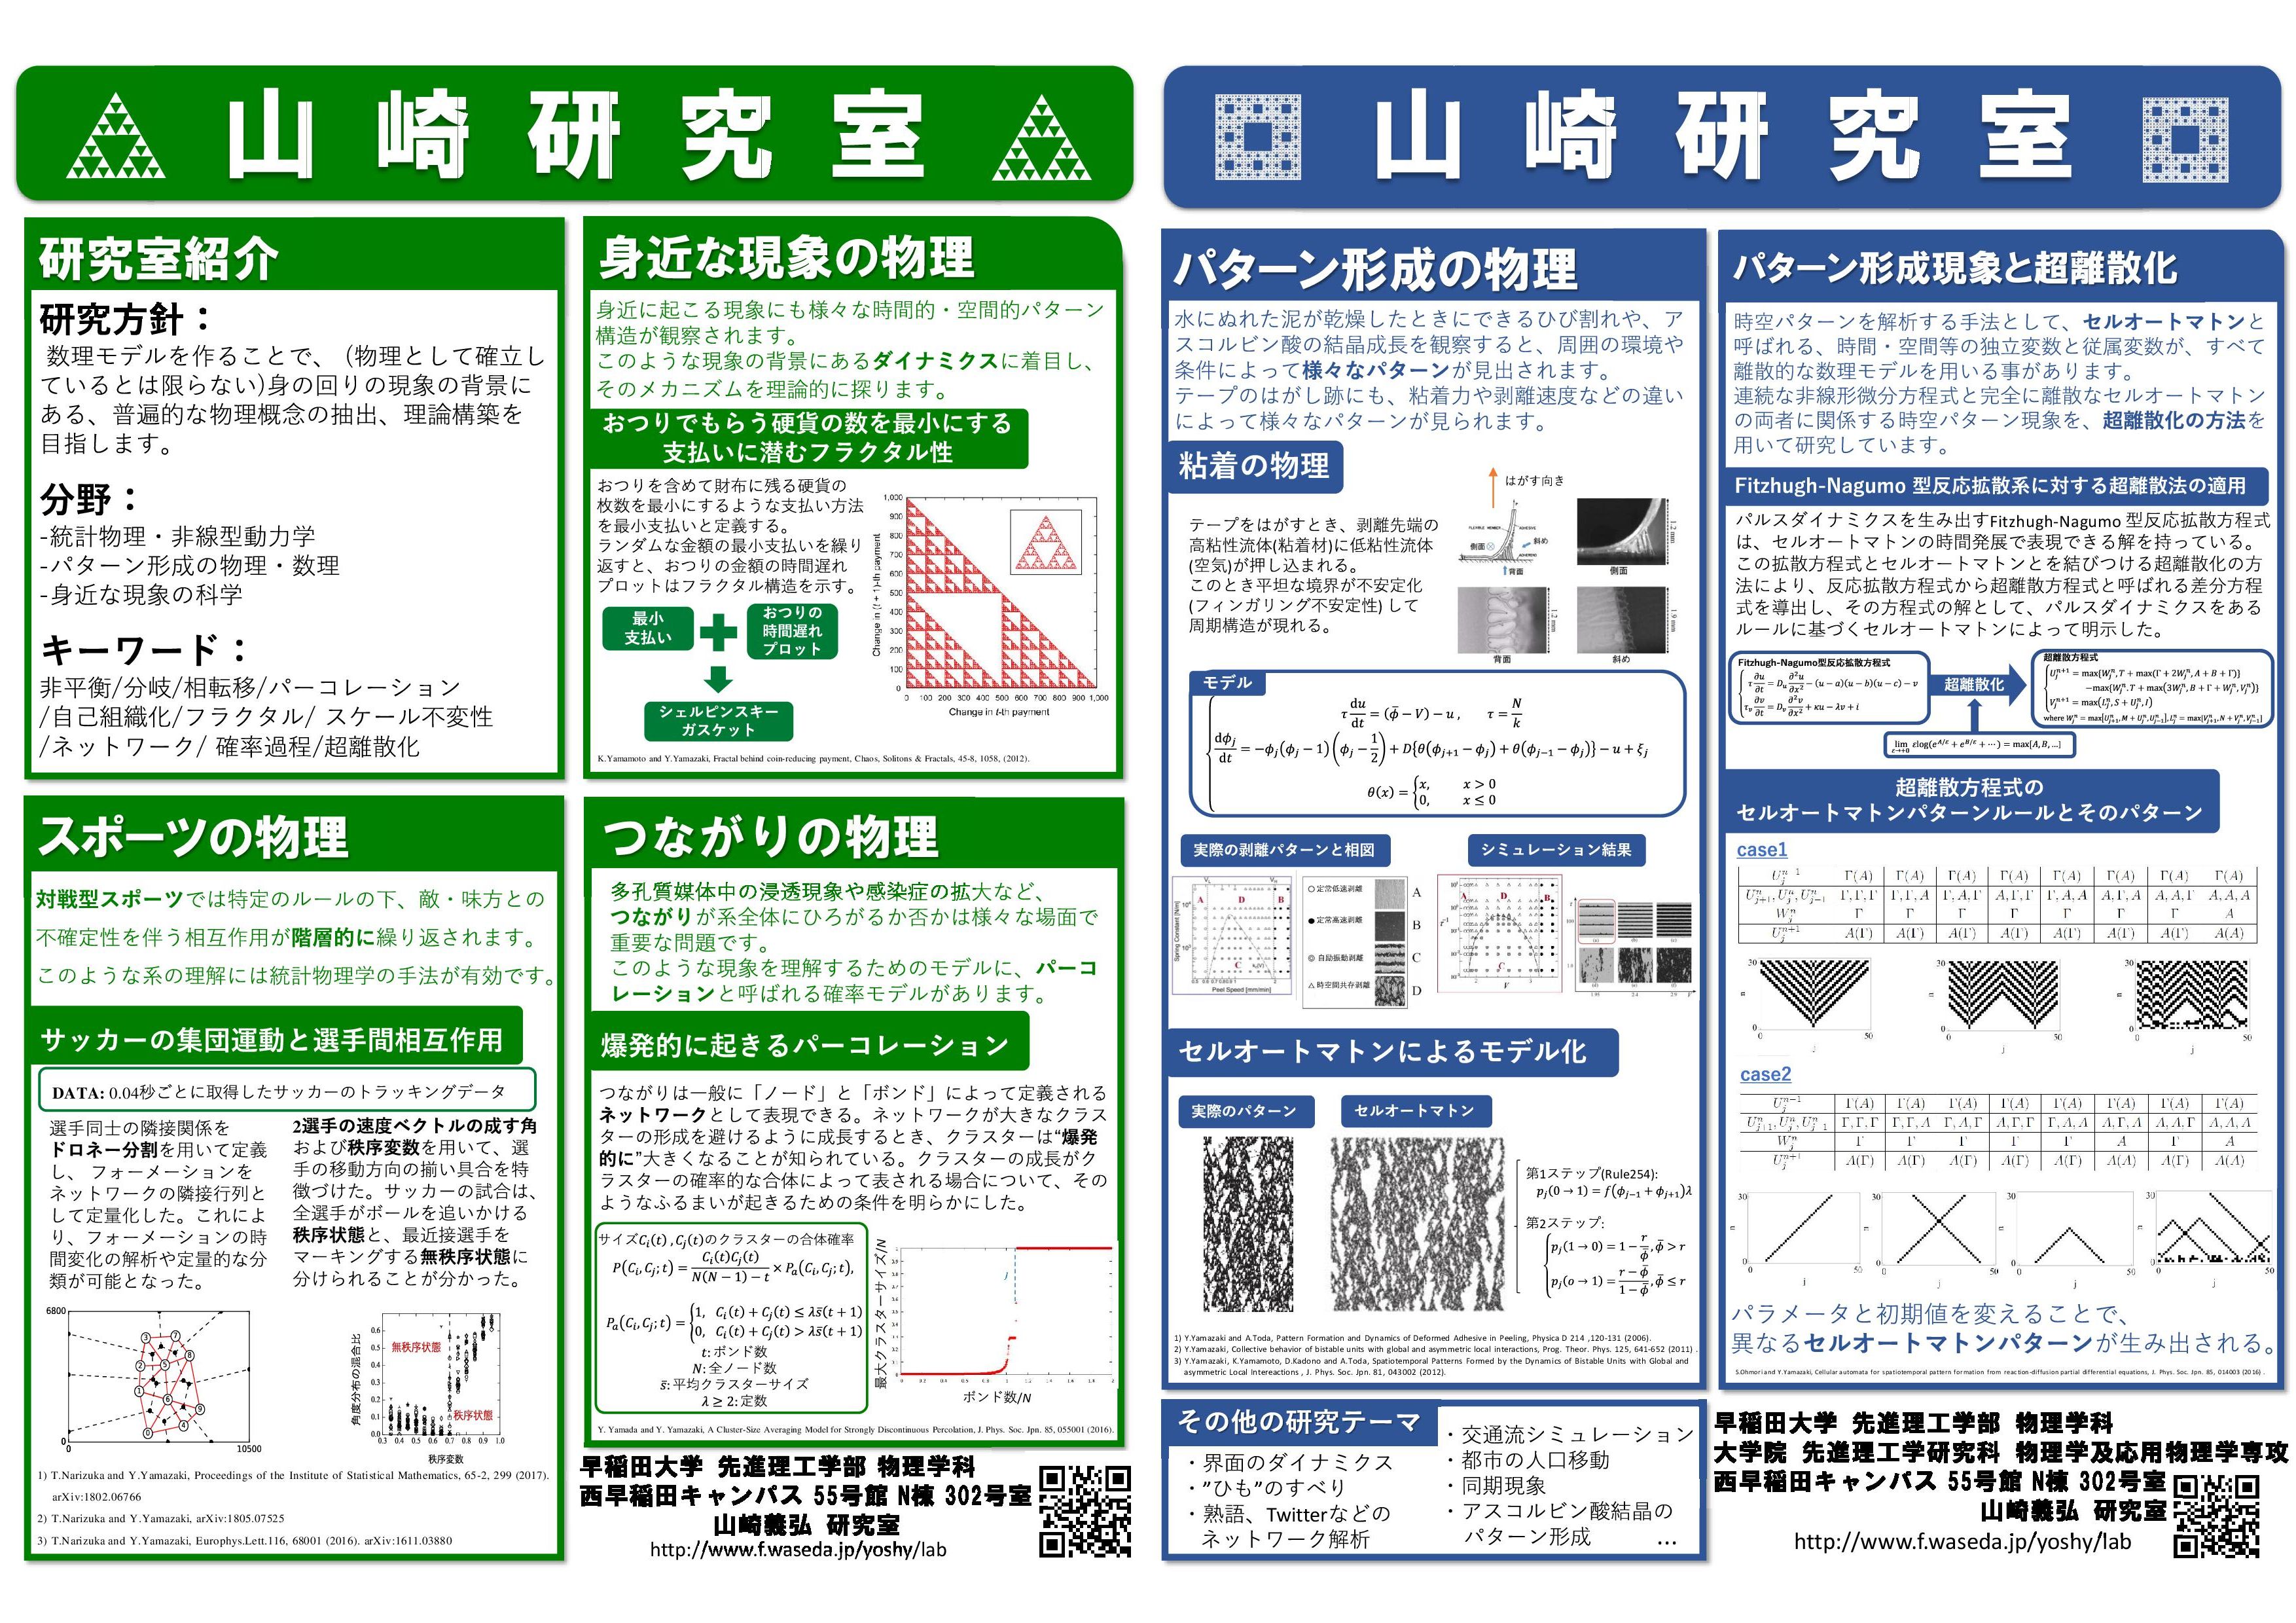 http://www.y2003.phys.waseda.ac.jp/lab/fig/ylab_poster1.jpg